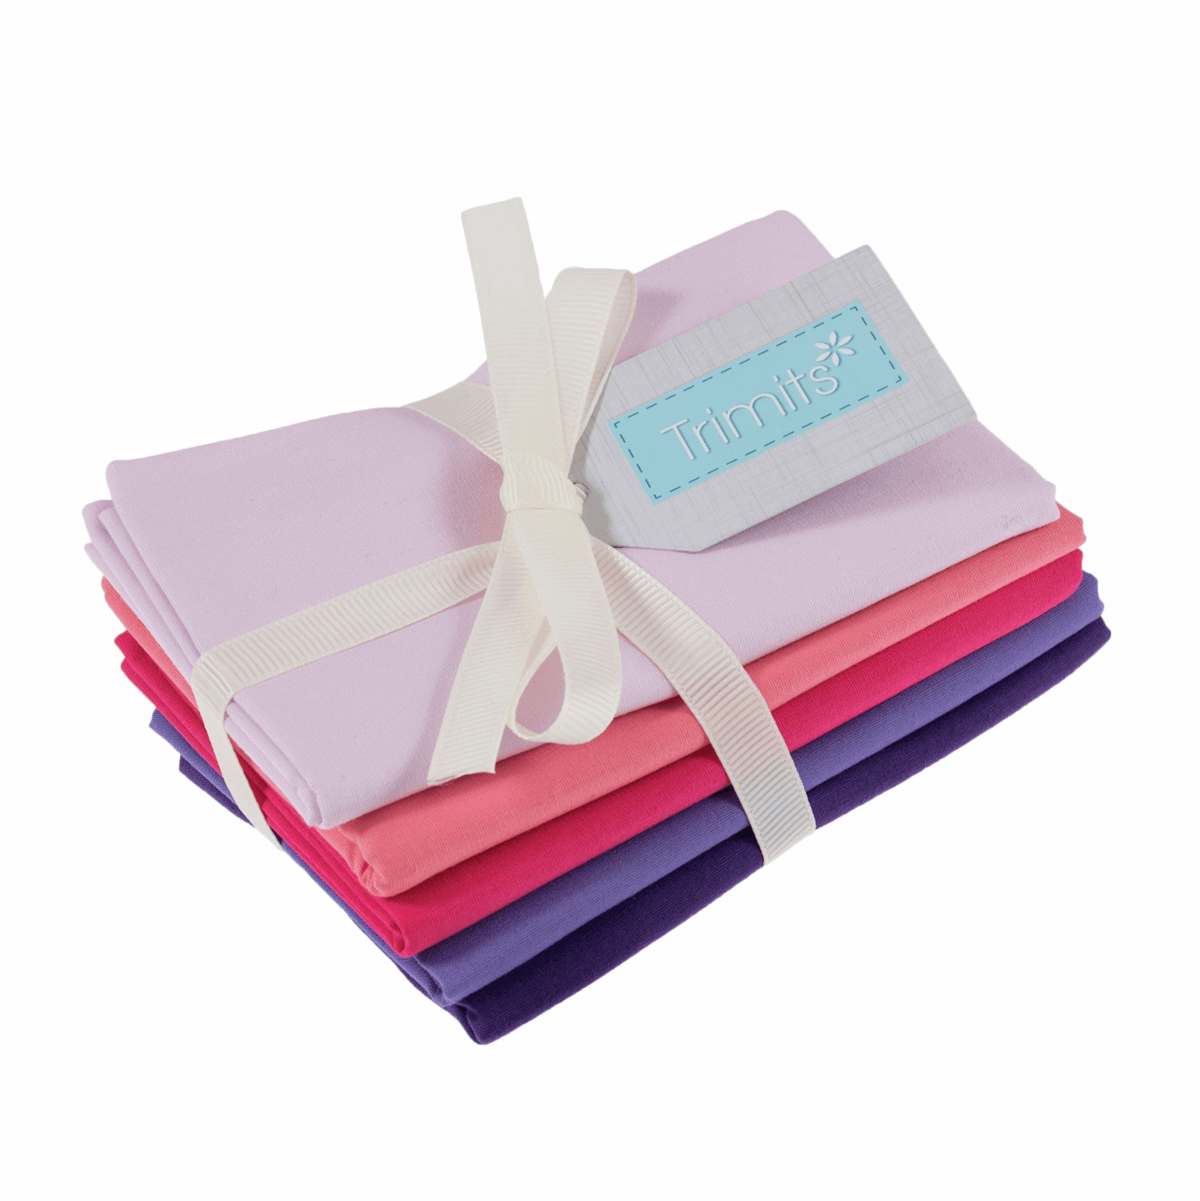 Bundle Of 5 Plain/Solid Cotton Fat Quarters: pink and purple colours. Quilting Cottons by Trimits.